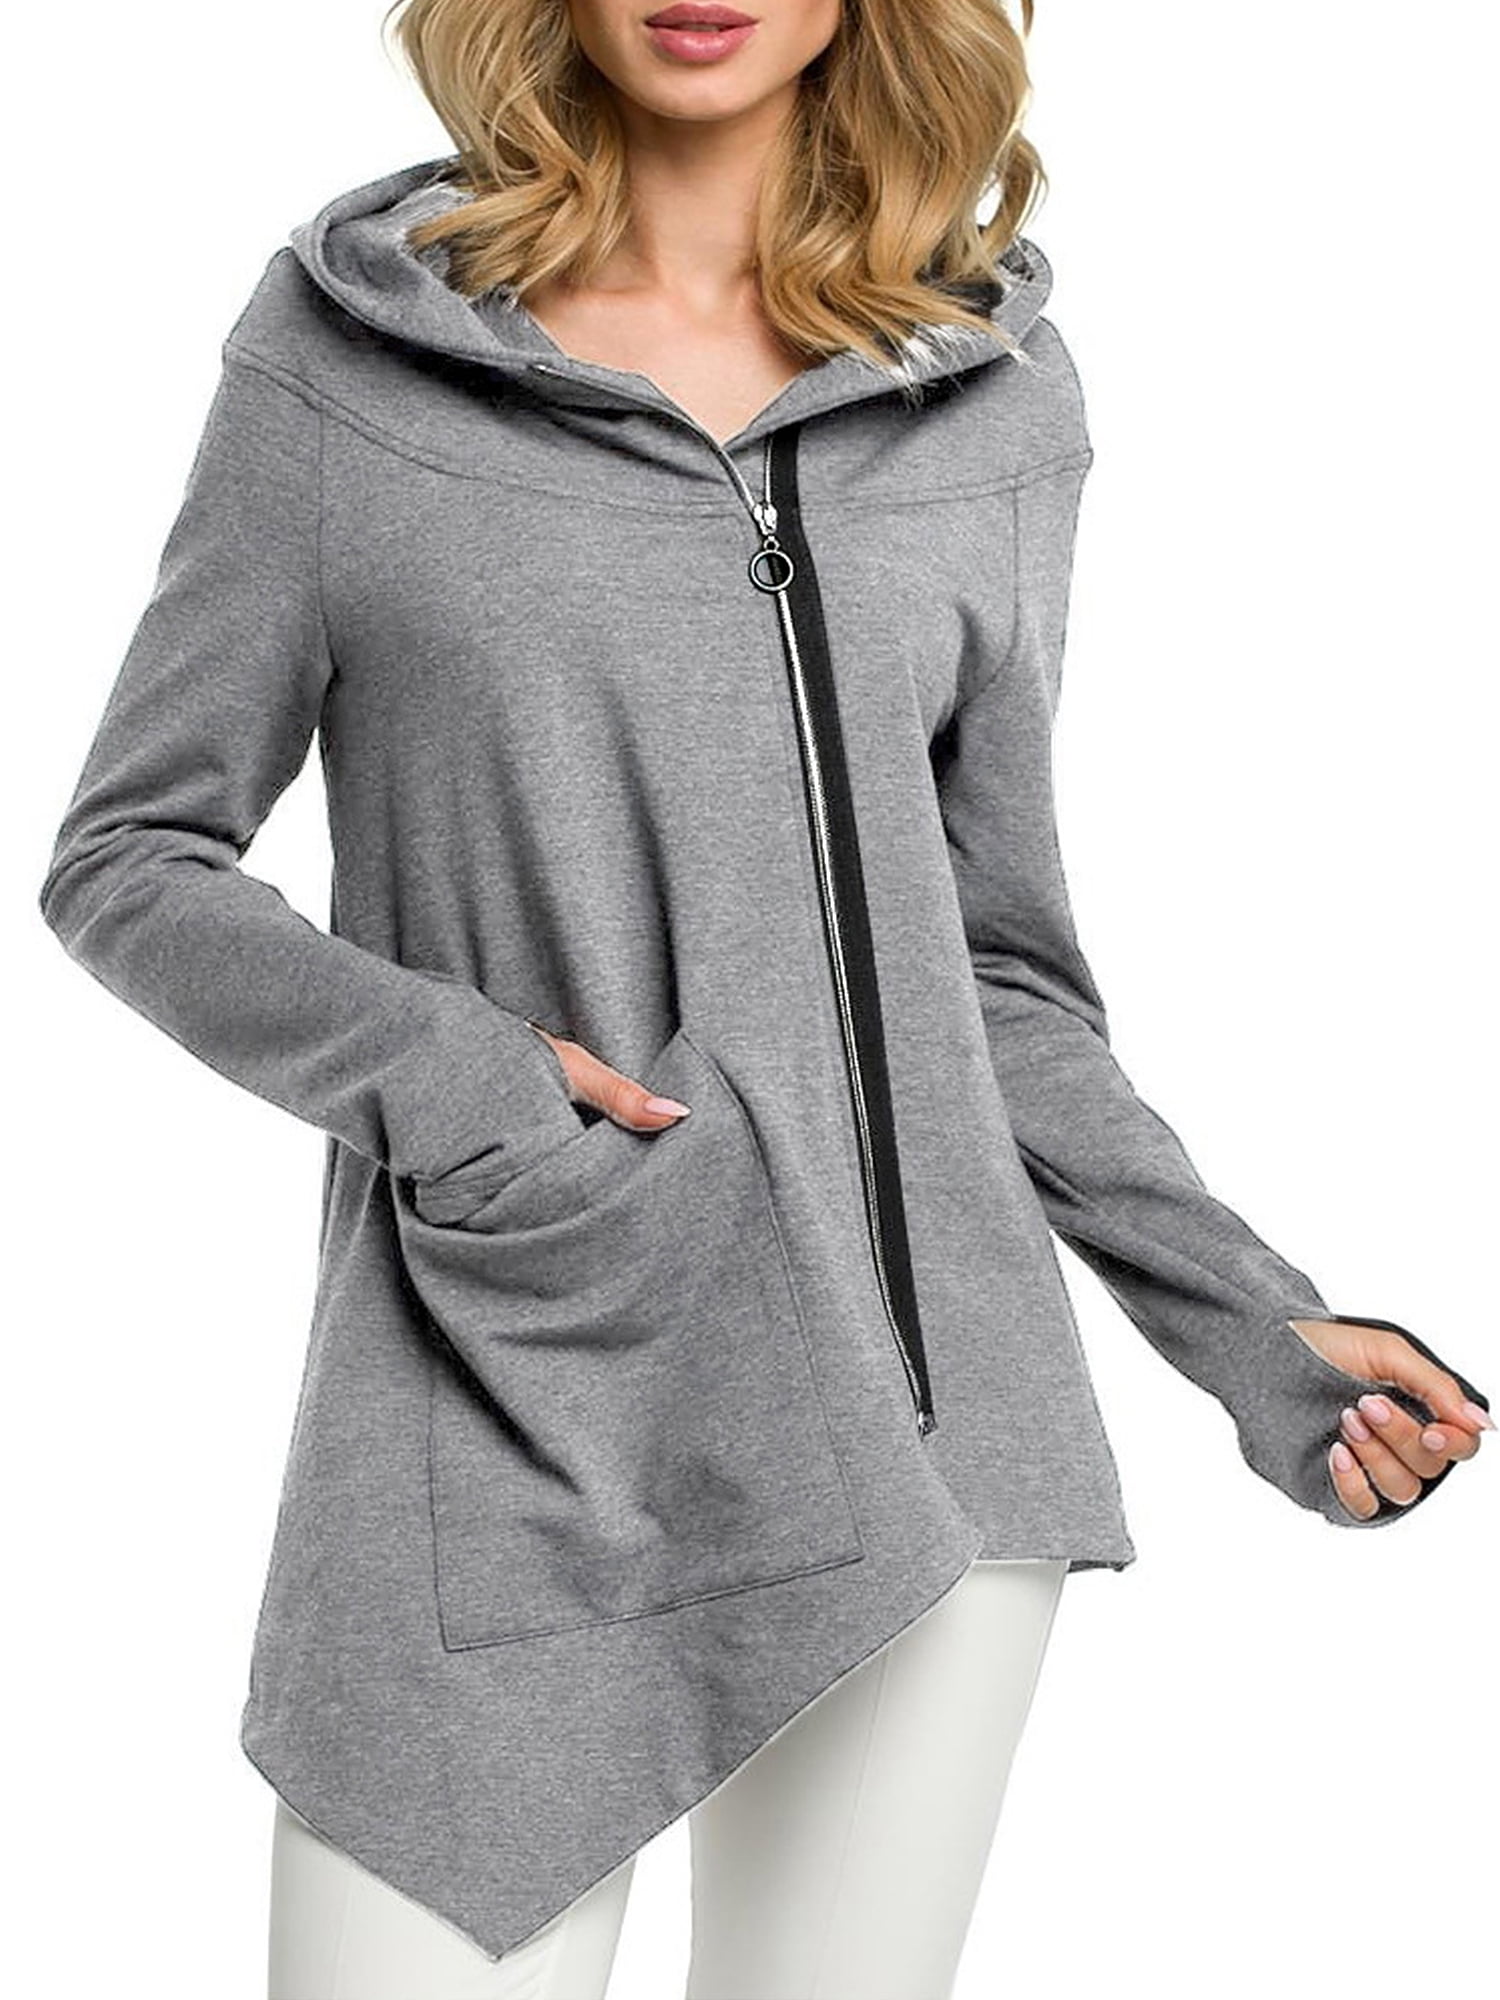 Womens Winter Long Sleeve Hoodie Sweatshirt Sweater Casual Hooded Coat Pullover 